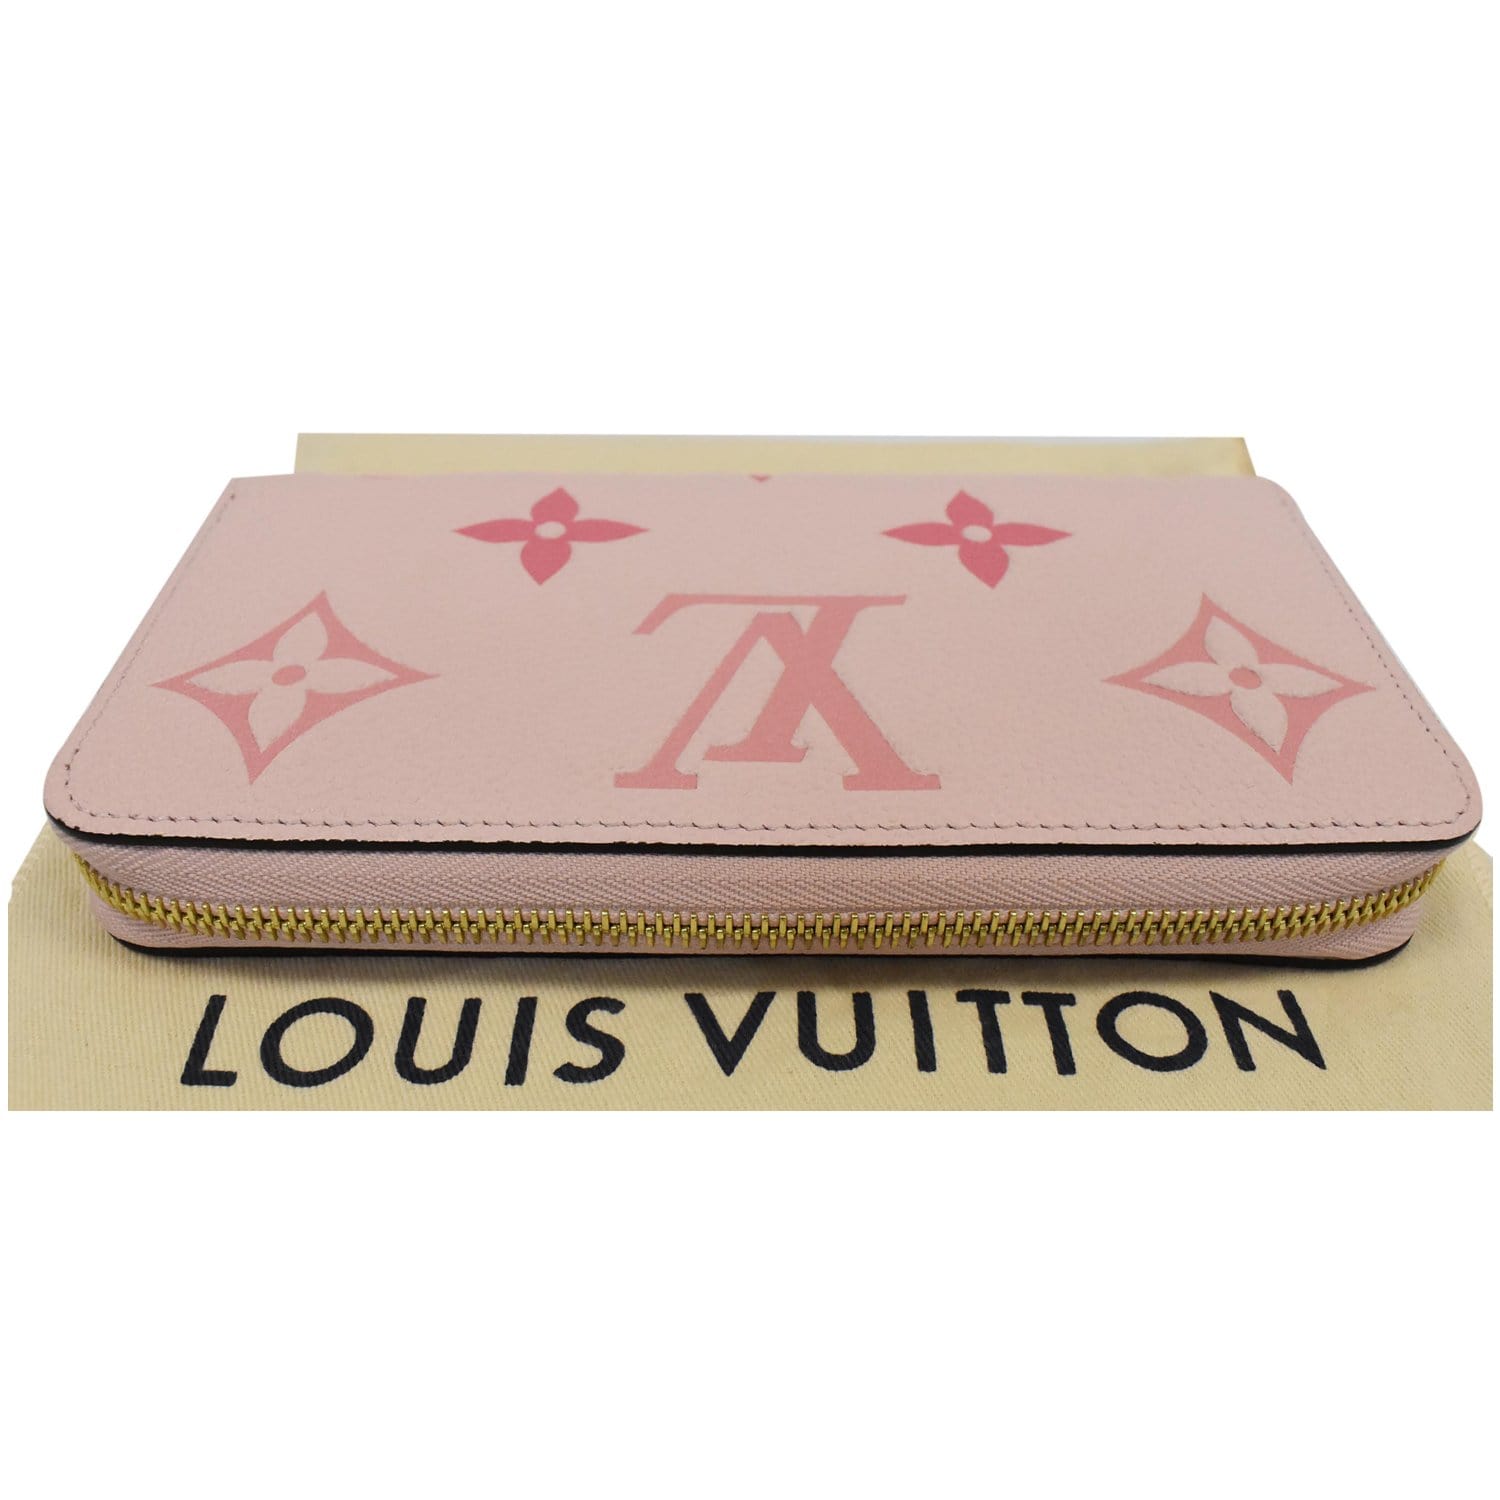 Pink Louis Vuitton 